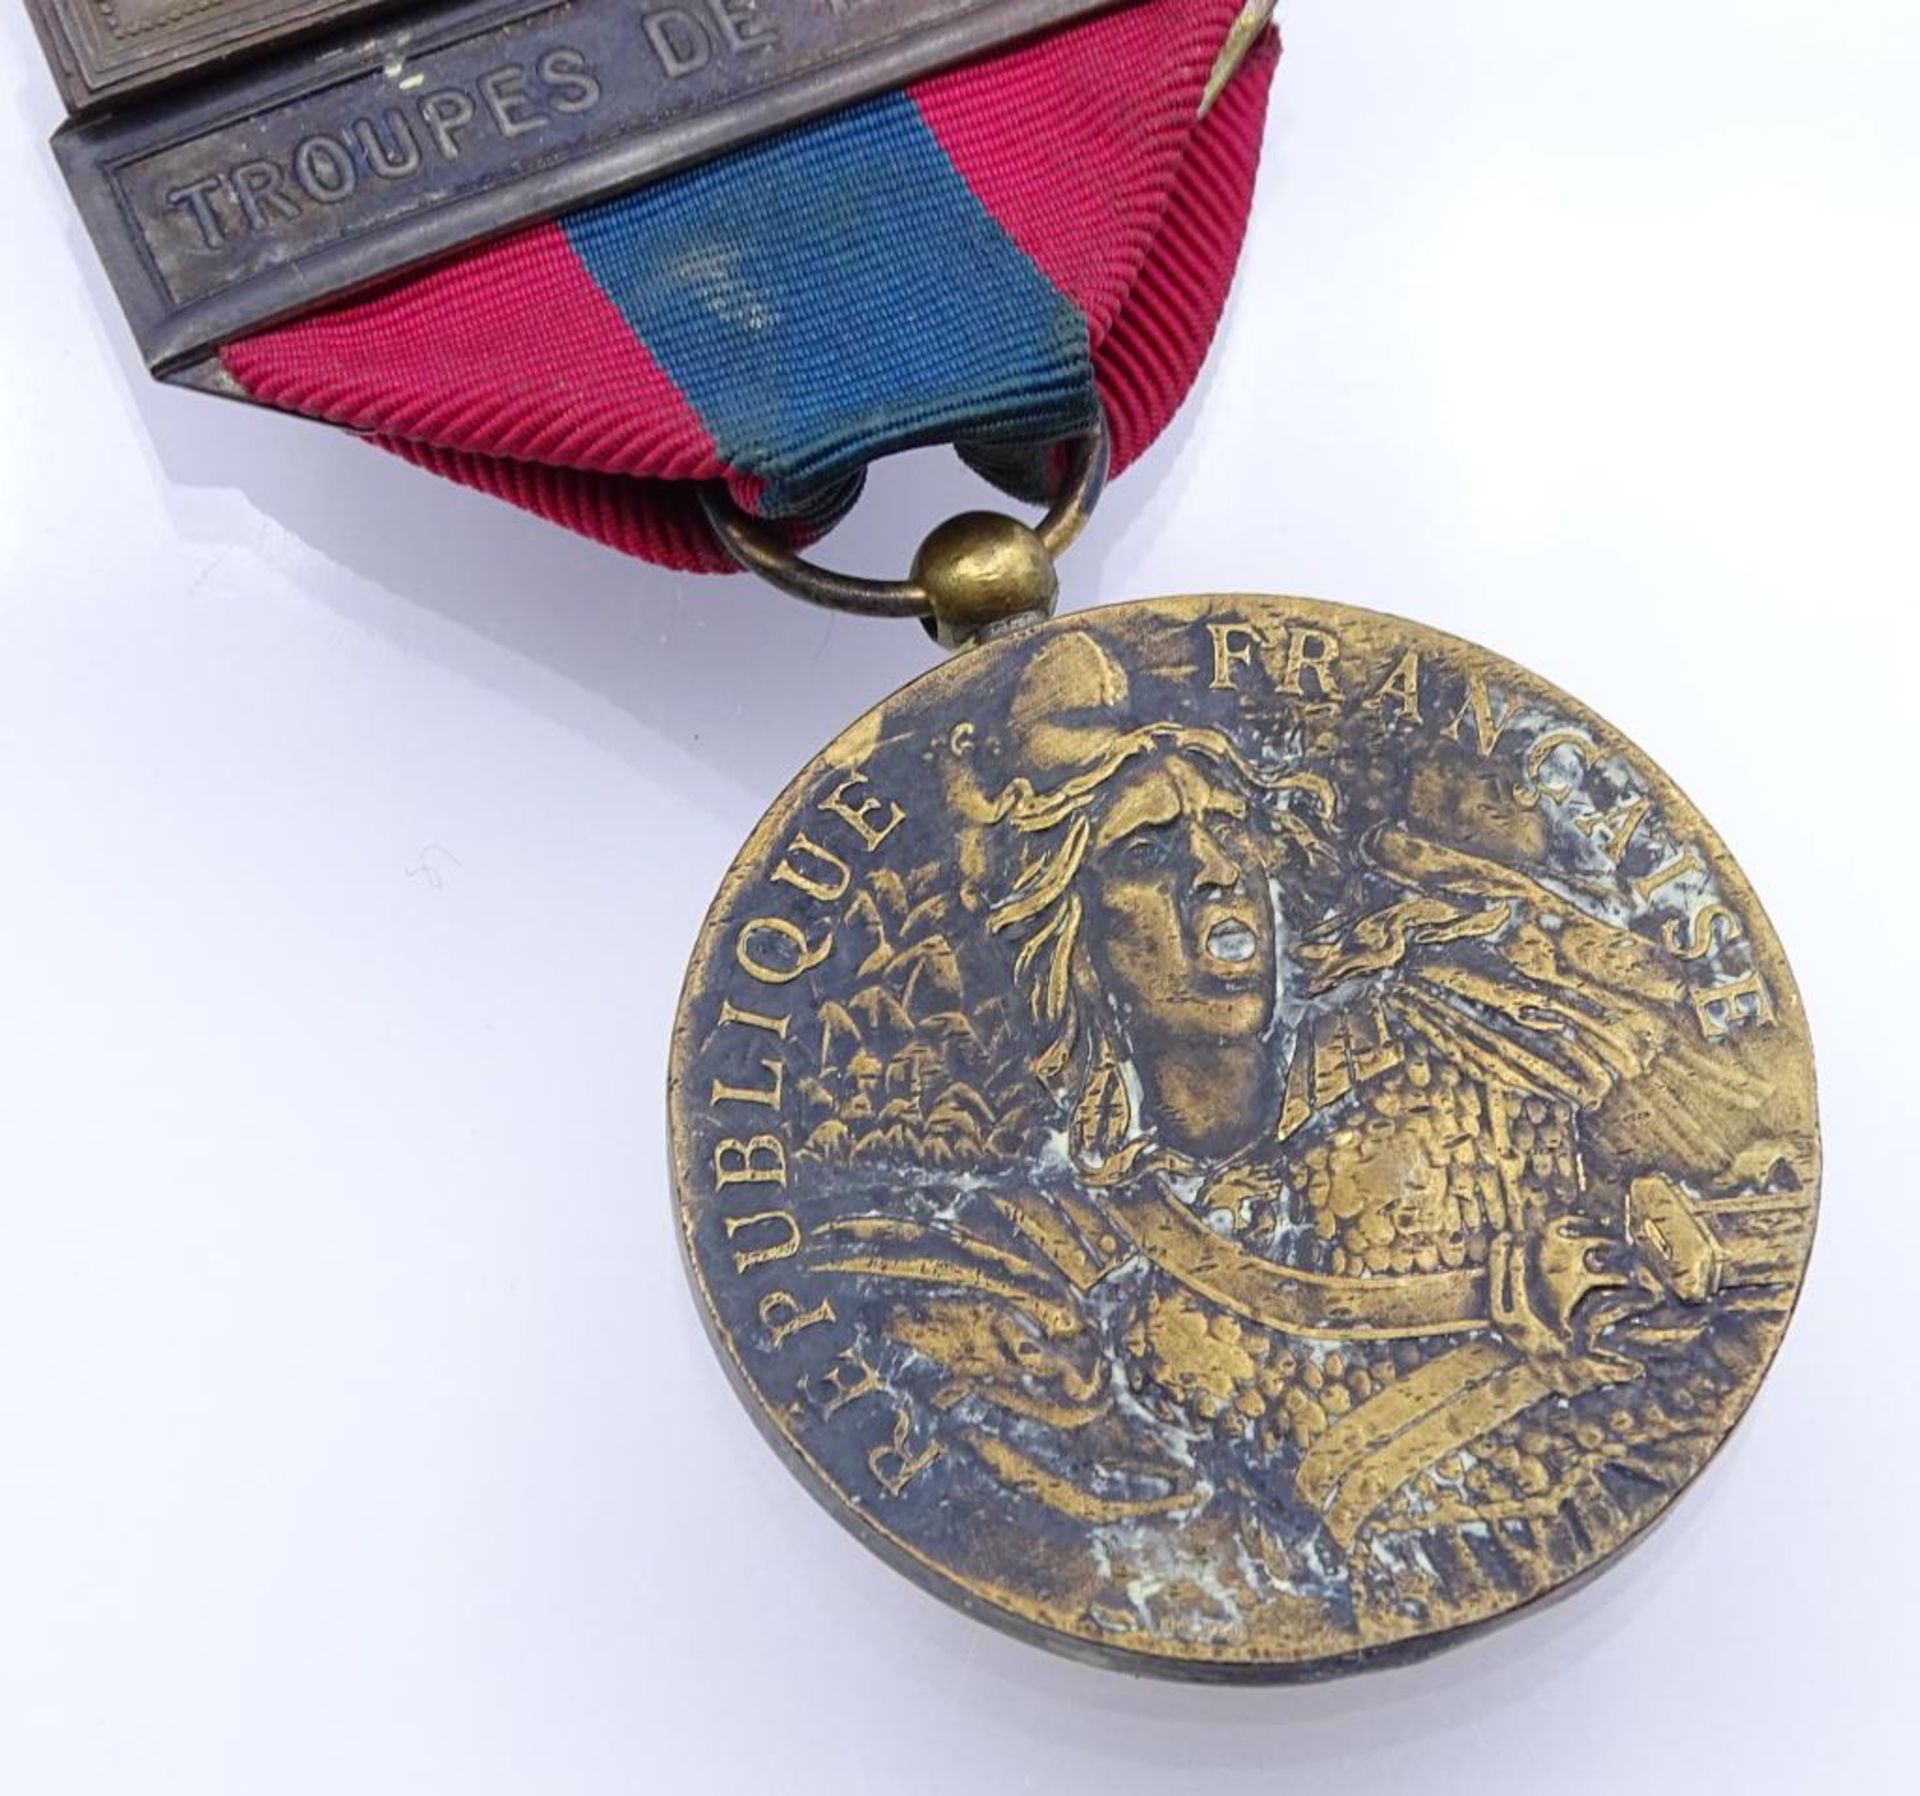 Medaille der Landesverteidigung-Fremdenlegion franz.Armee Tätigkeiten: Seetruppen, Kampfschwimmer, - Image 2 of 4